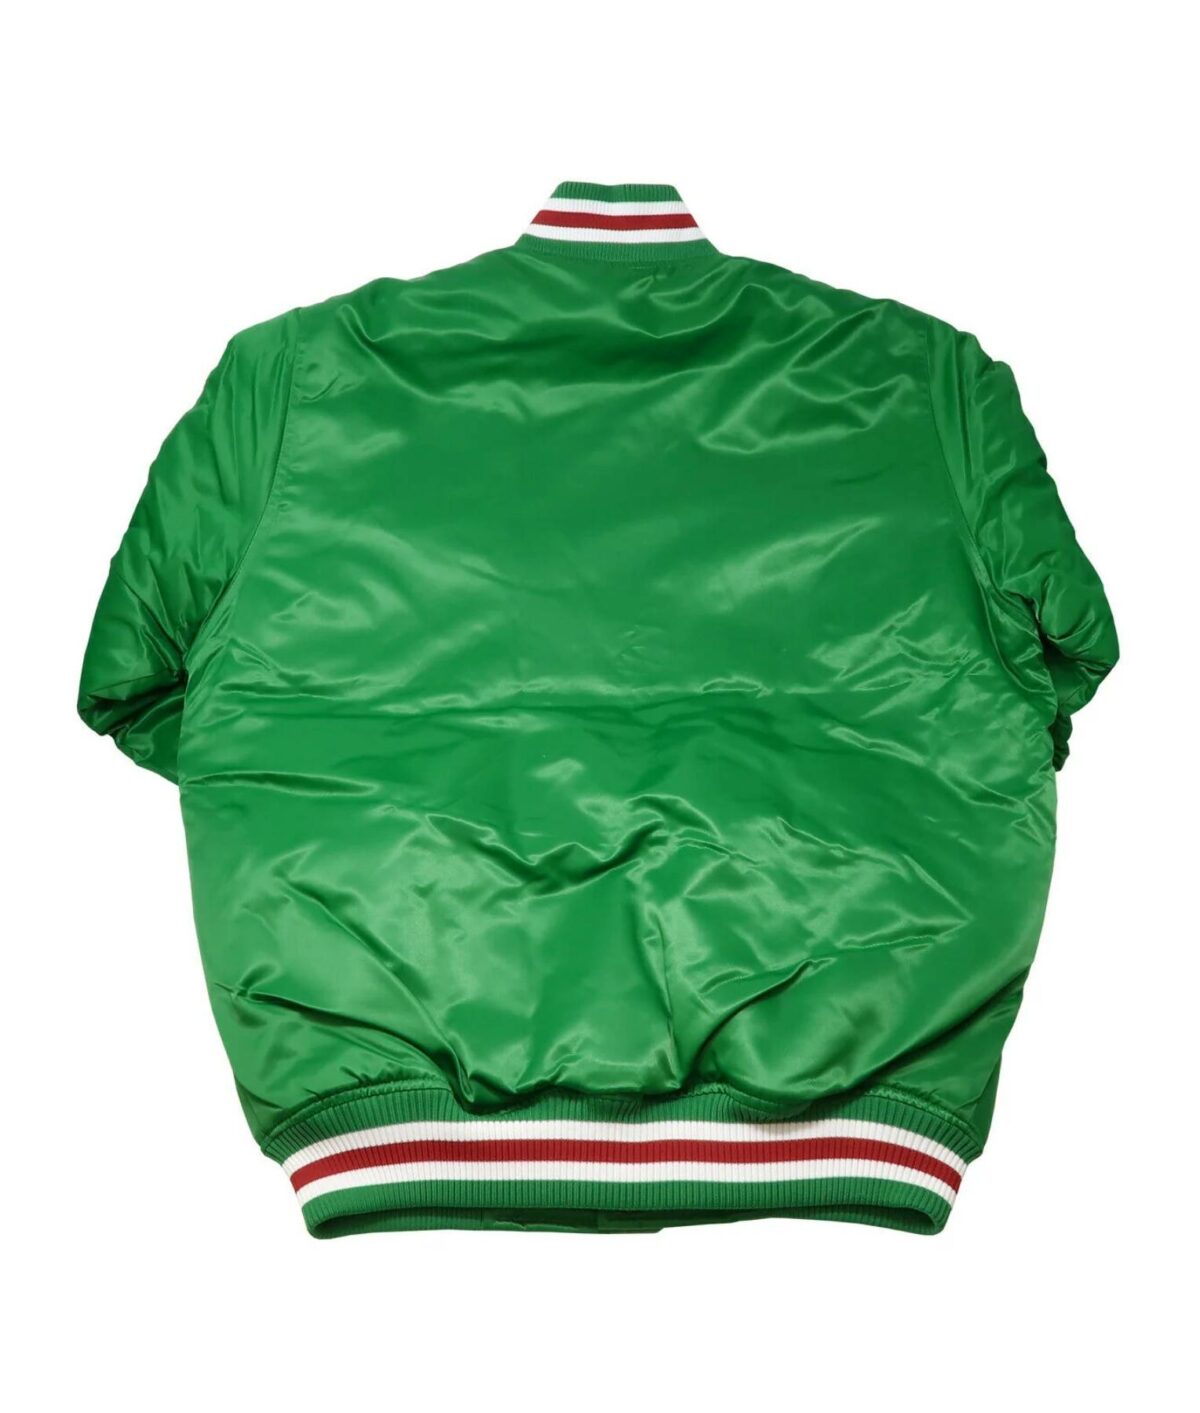 Mexico Green Satin Jacket